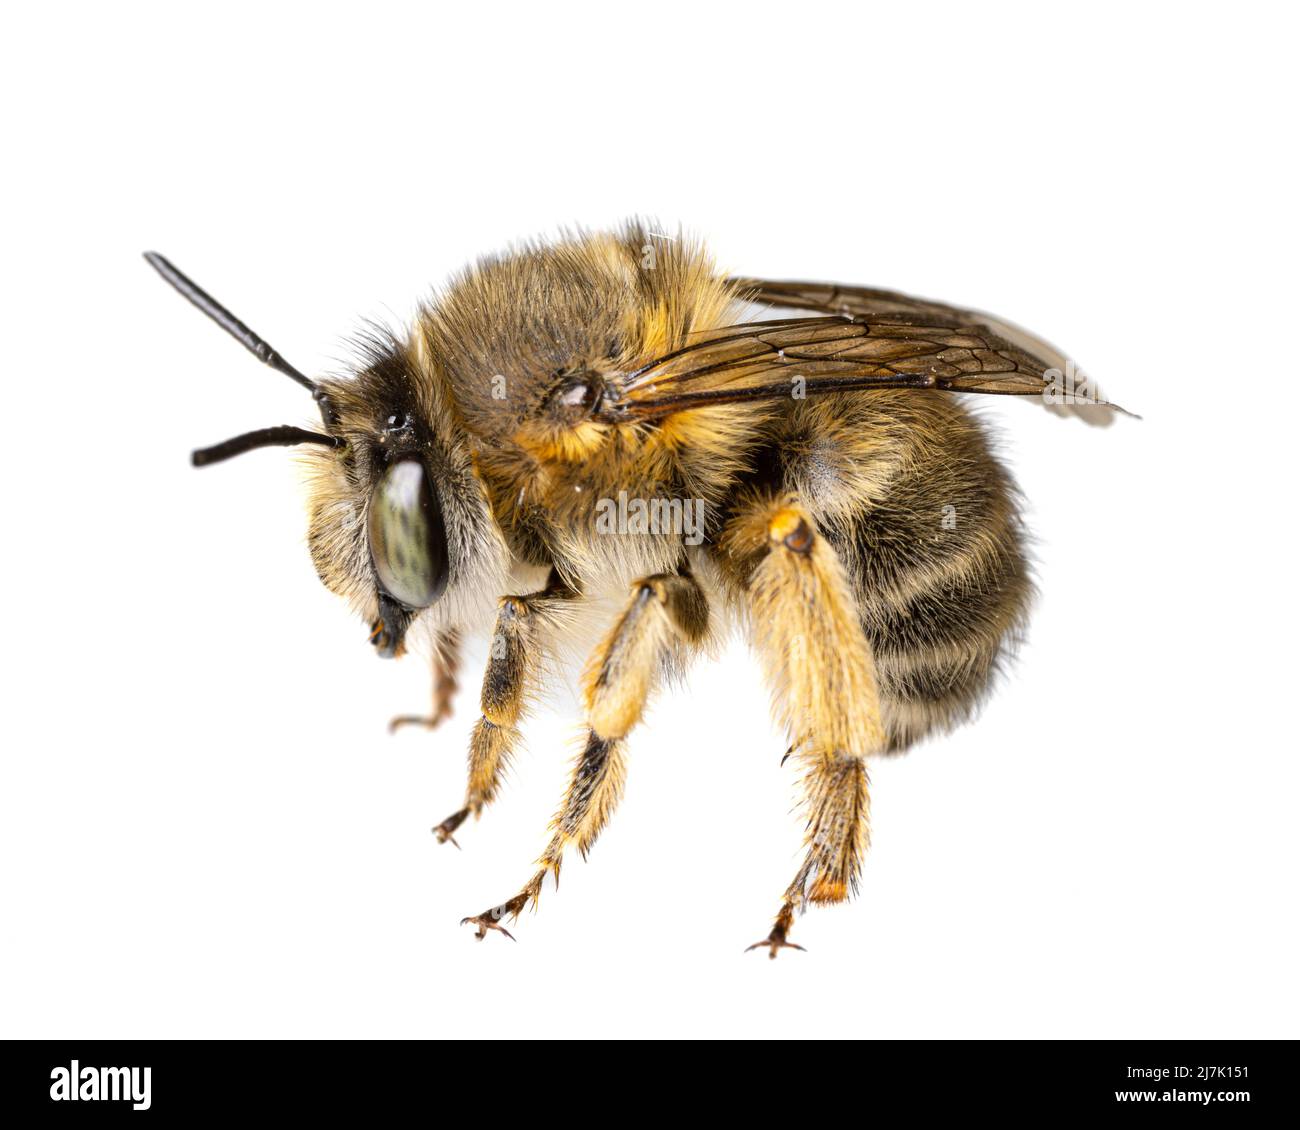 Insectos de europa - abejas: Macro de la hembra Anthophora crinipes (Pelzbienen) aisladas sobre fondo blanco - detalles de las piernas Foto de stock